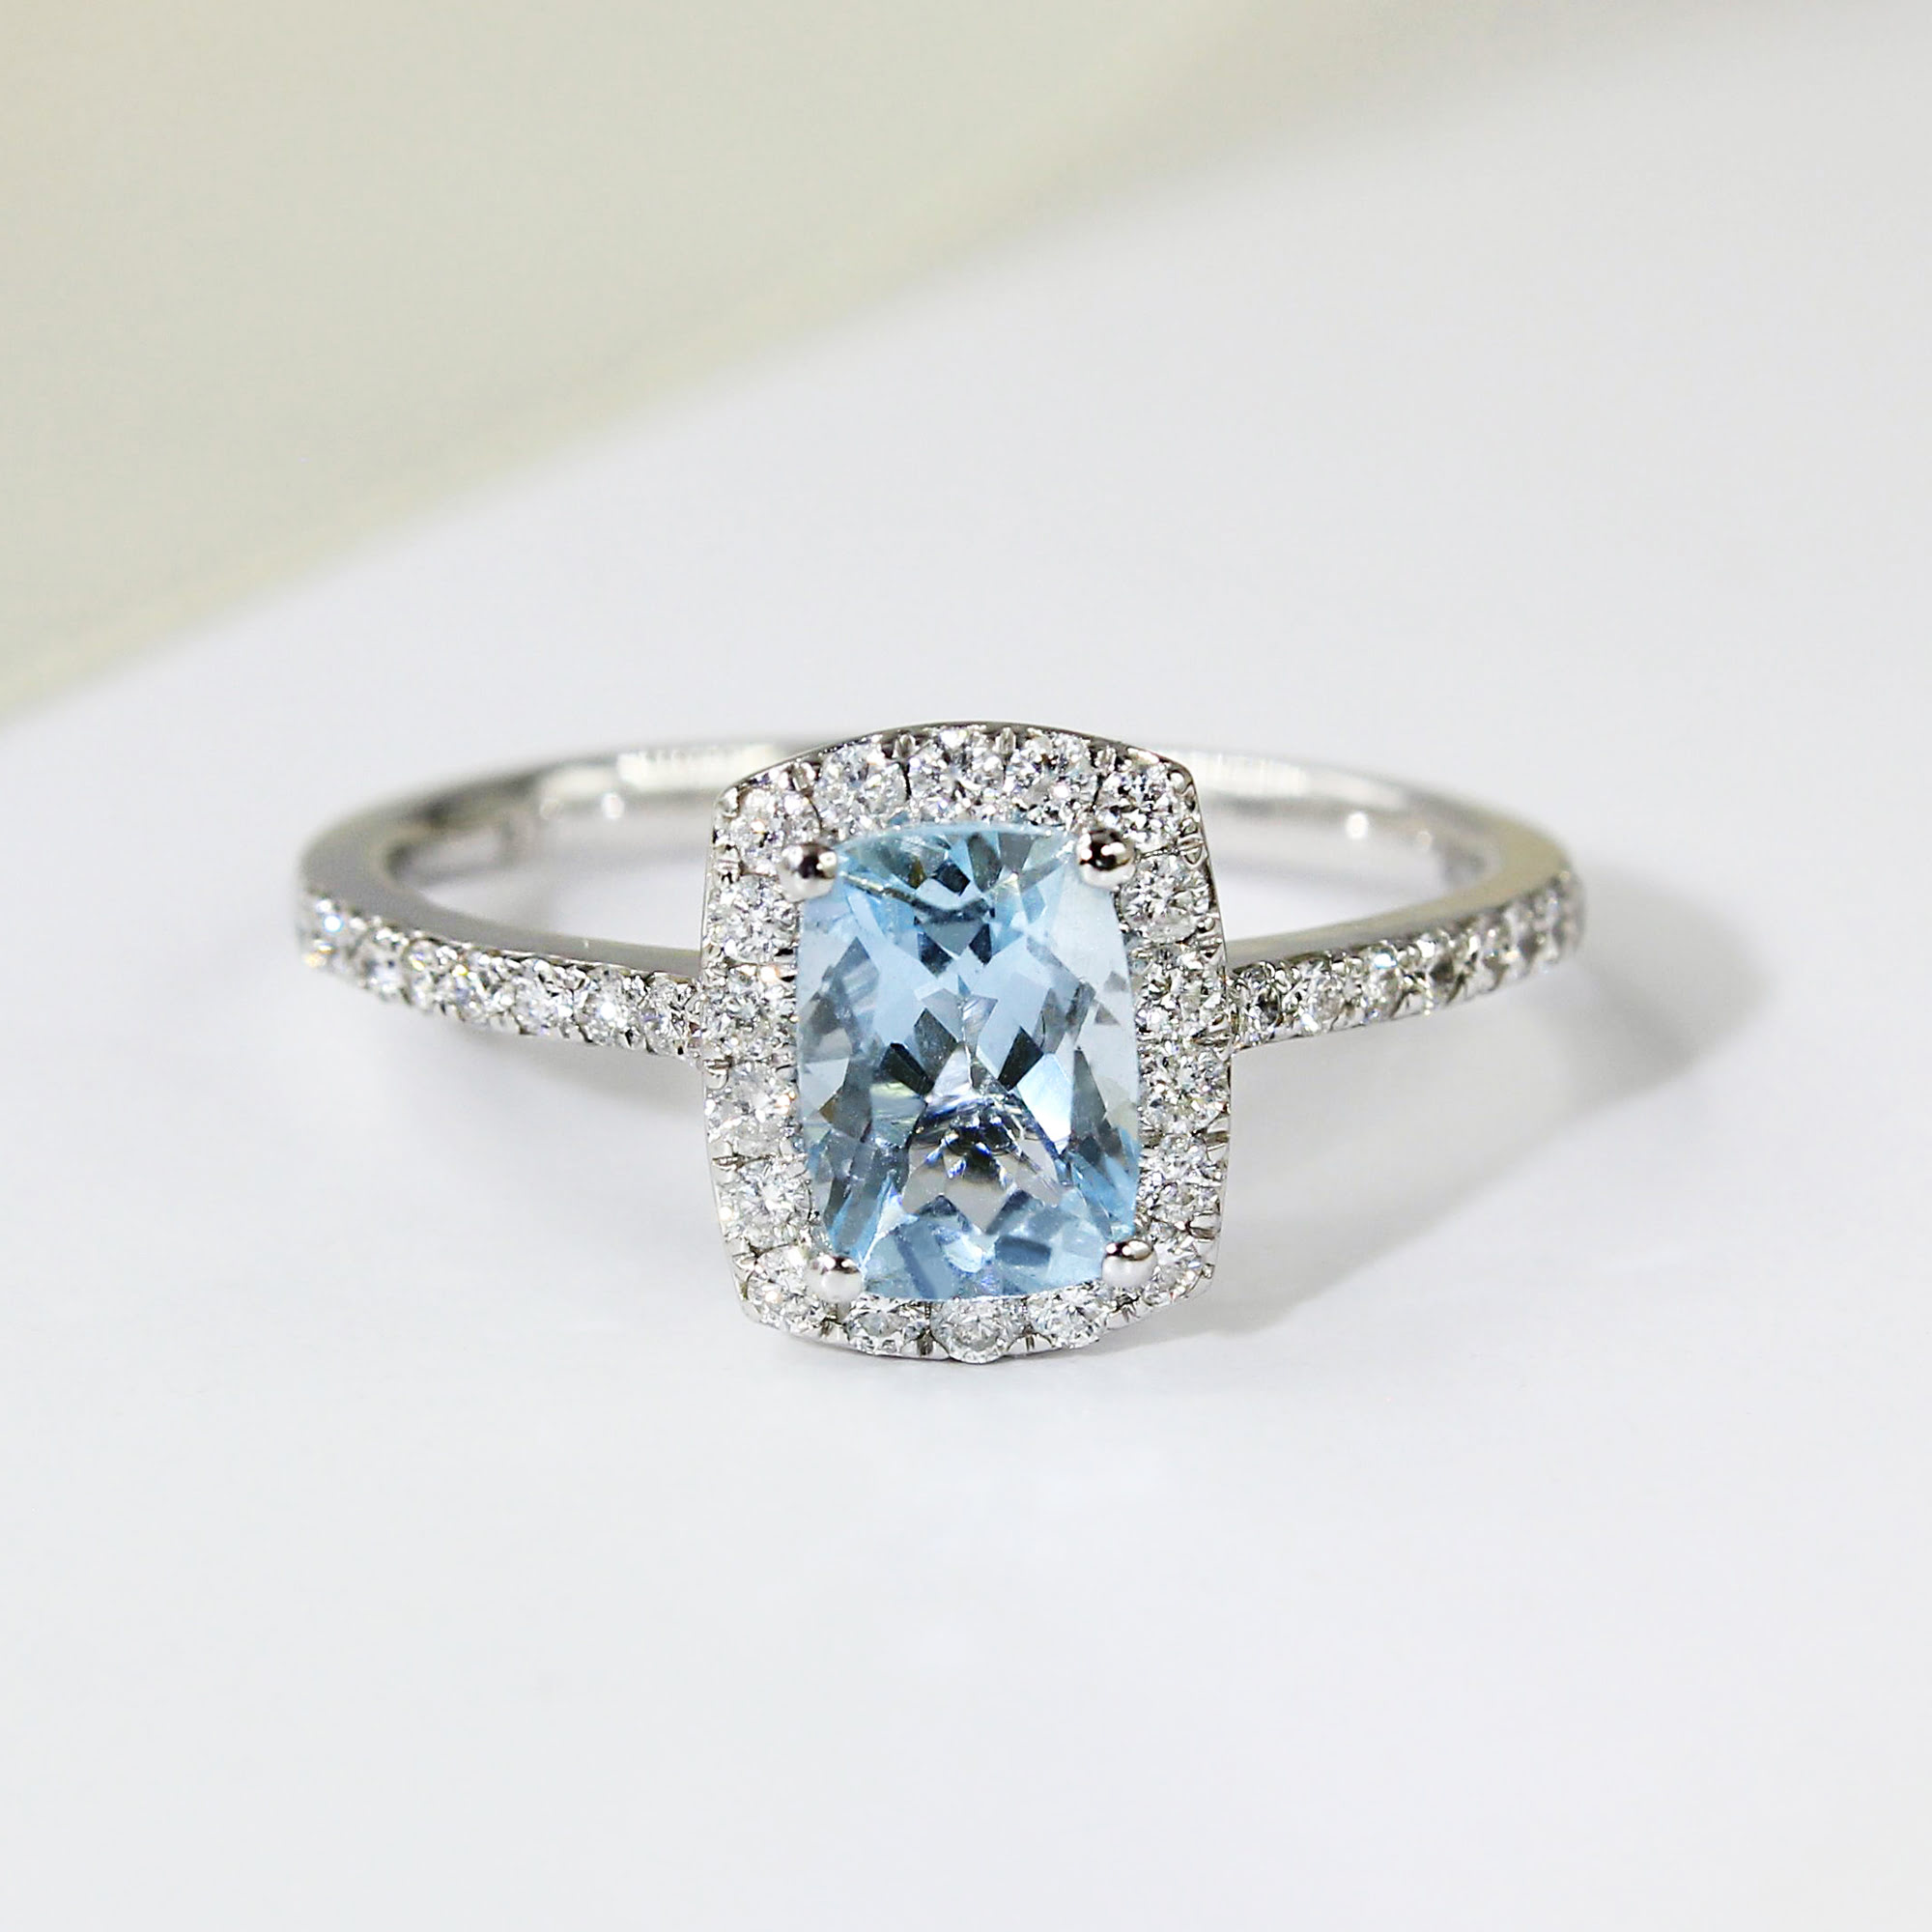 Aquamarine engagement rings